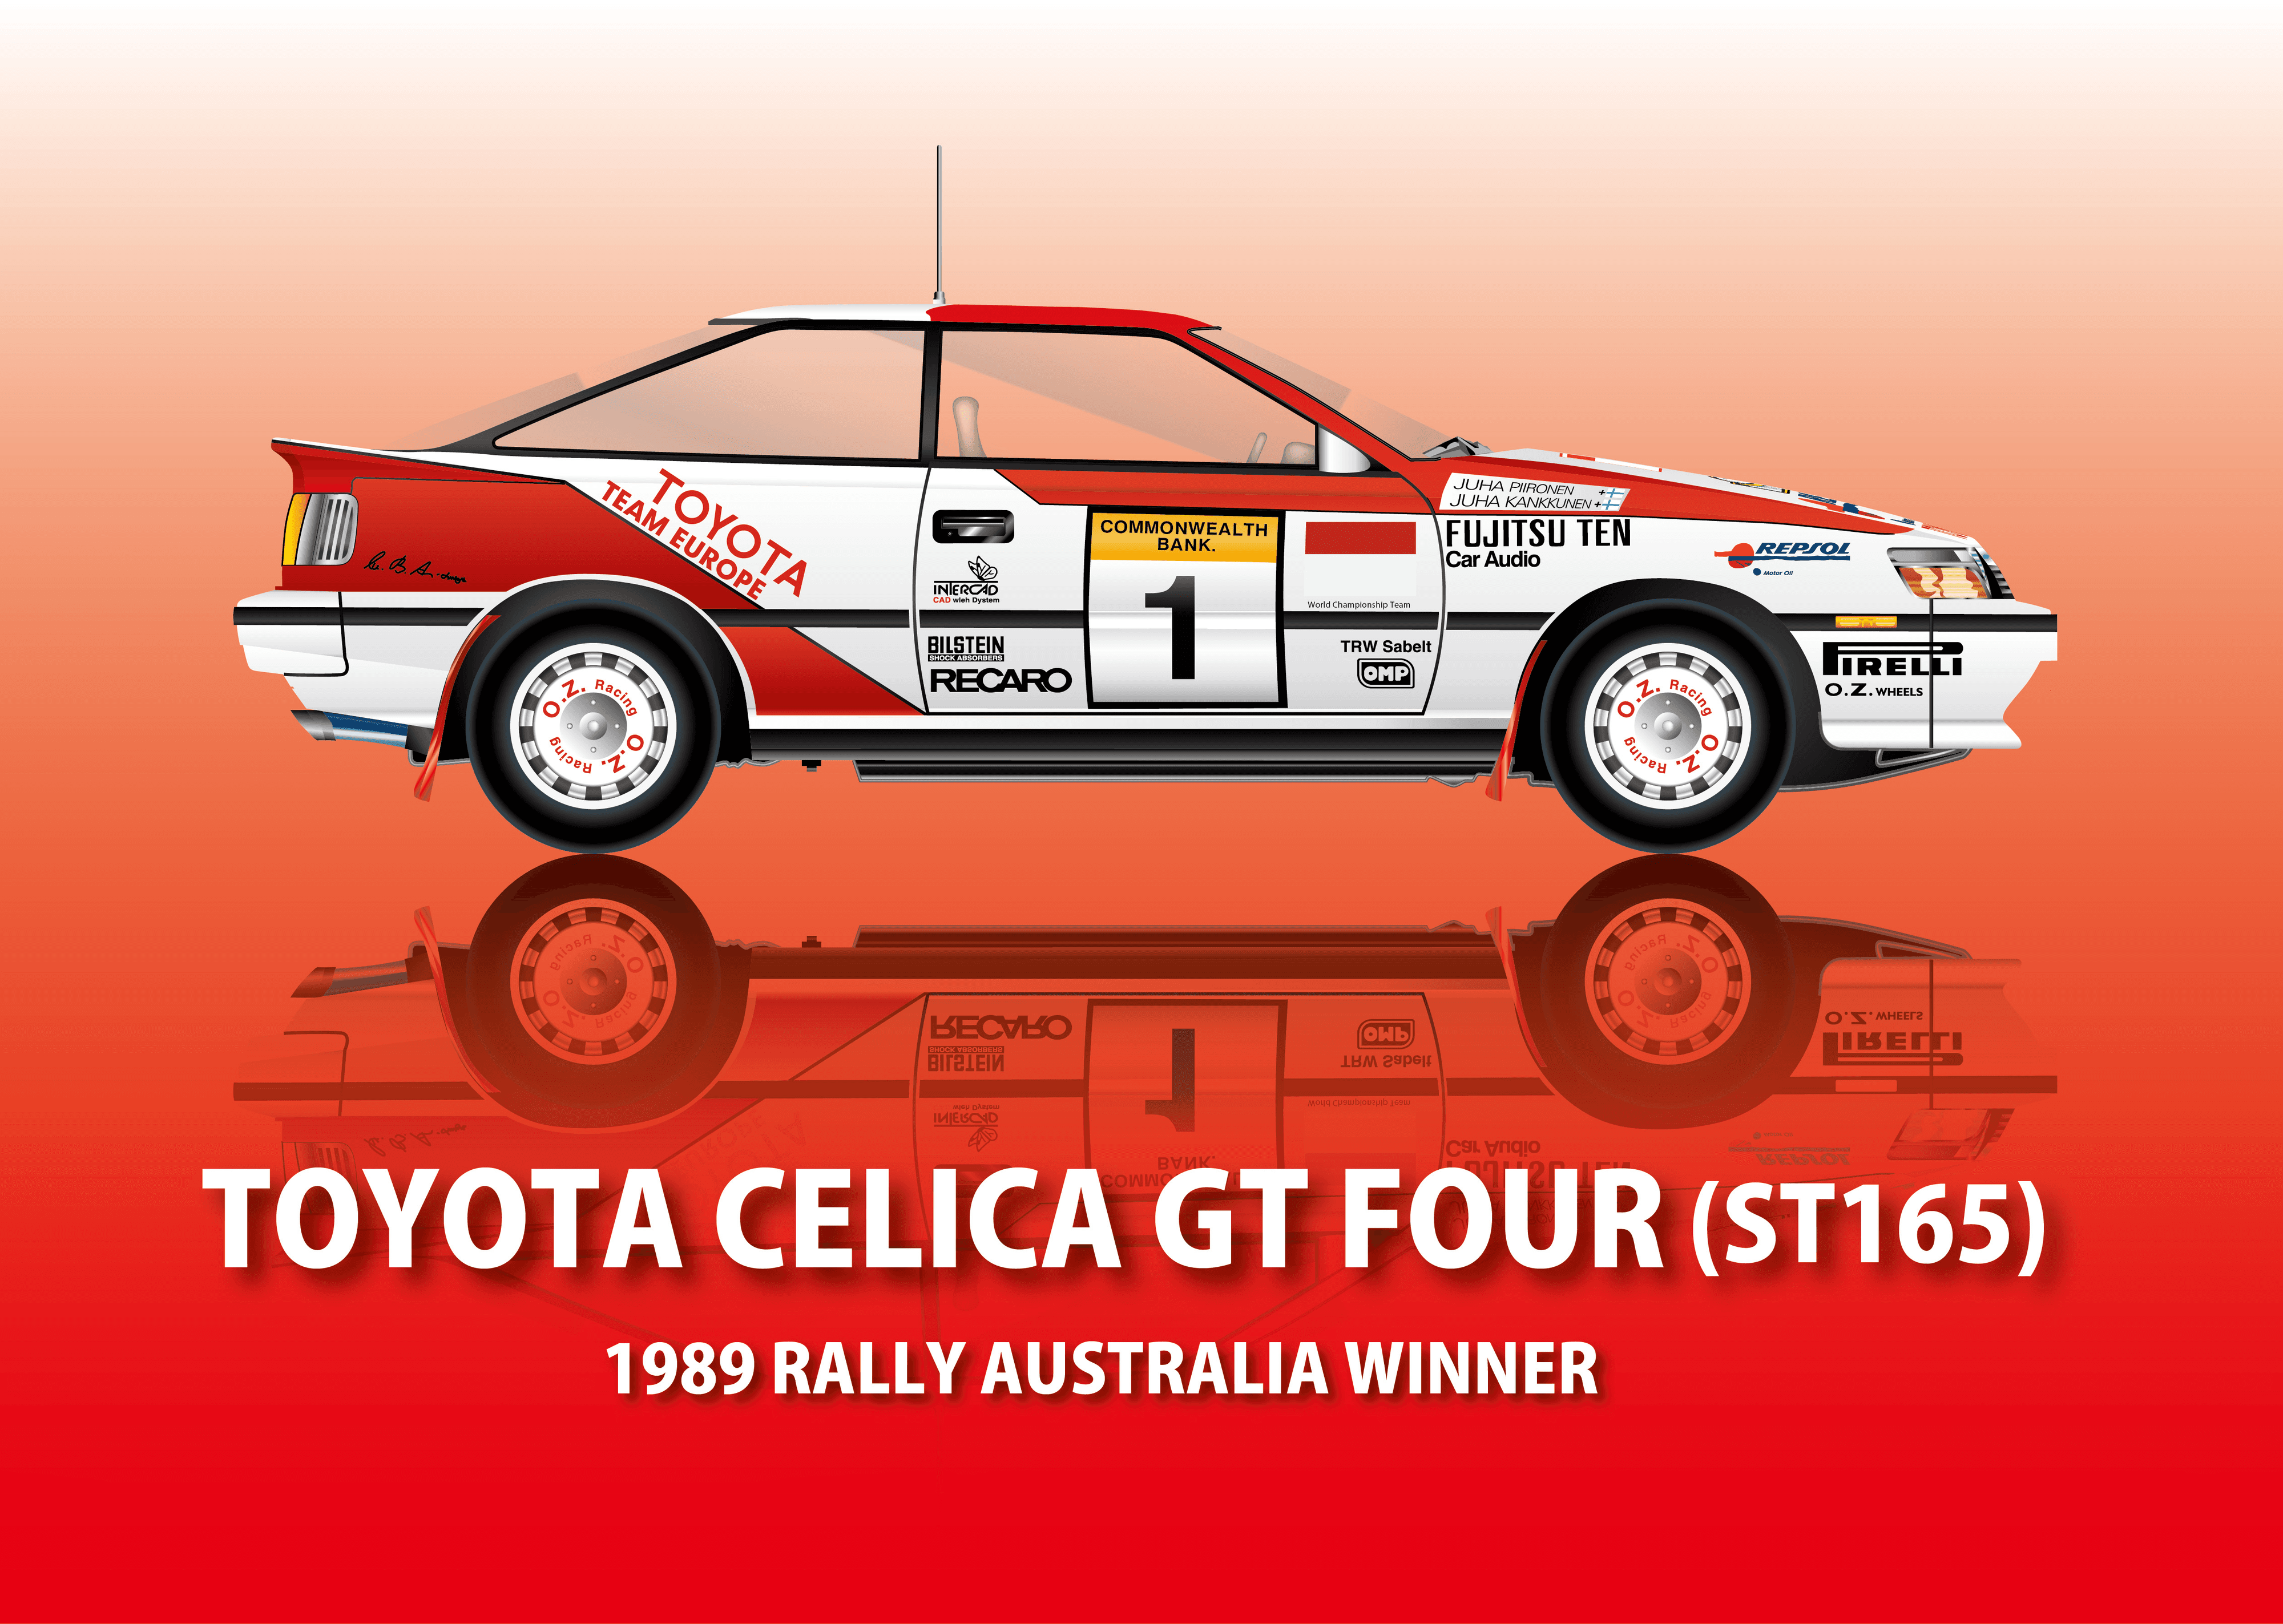 TOYOTA CELICA GT FOUR (ST165) 1989 RALLY AUSTRALIA WINNER